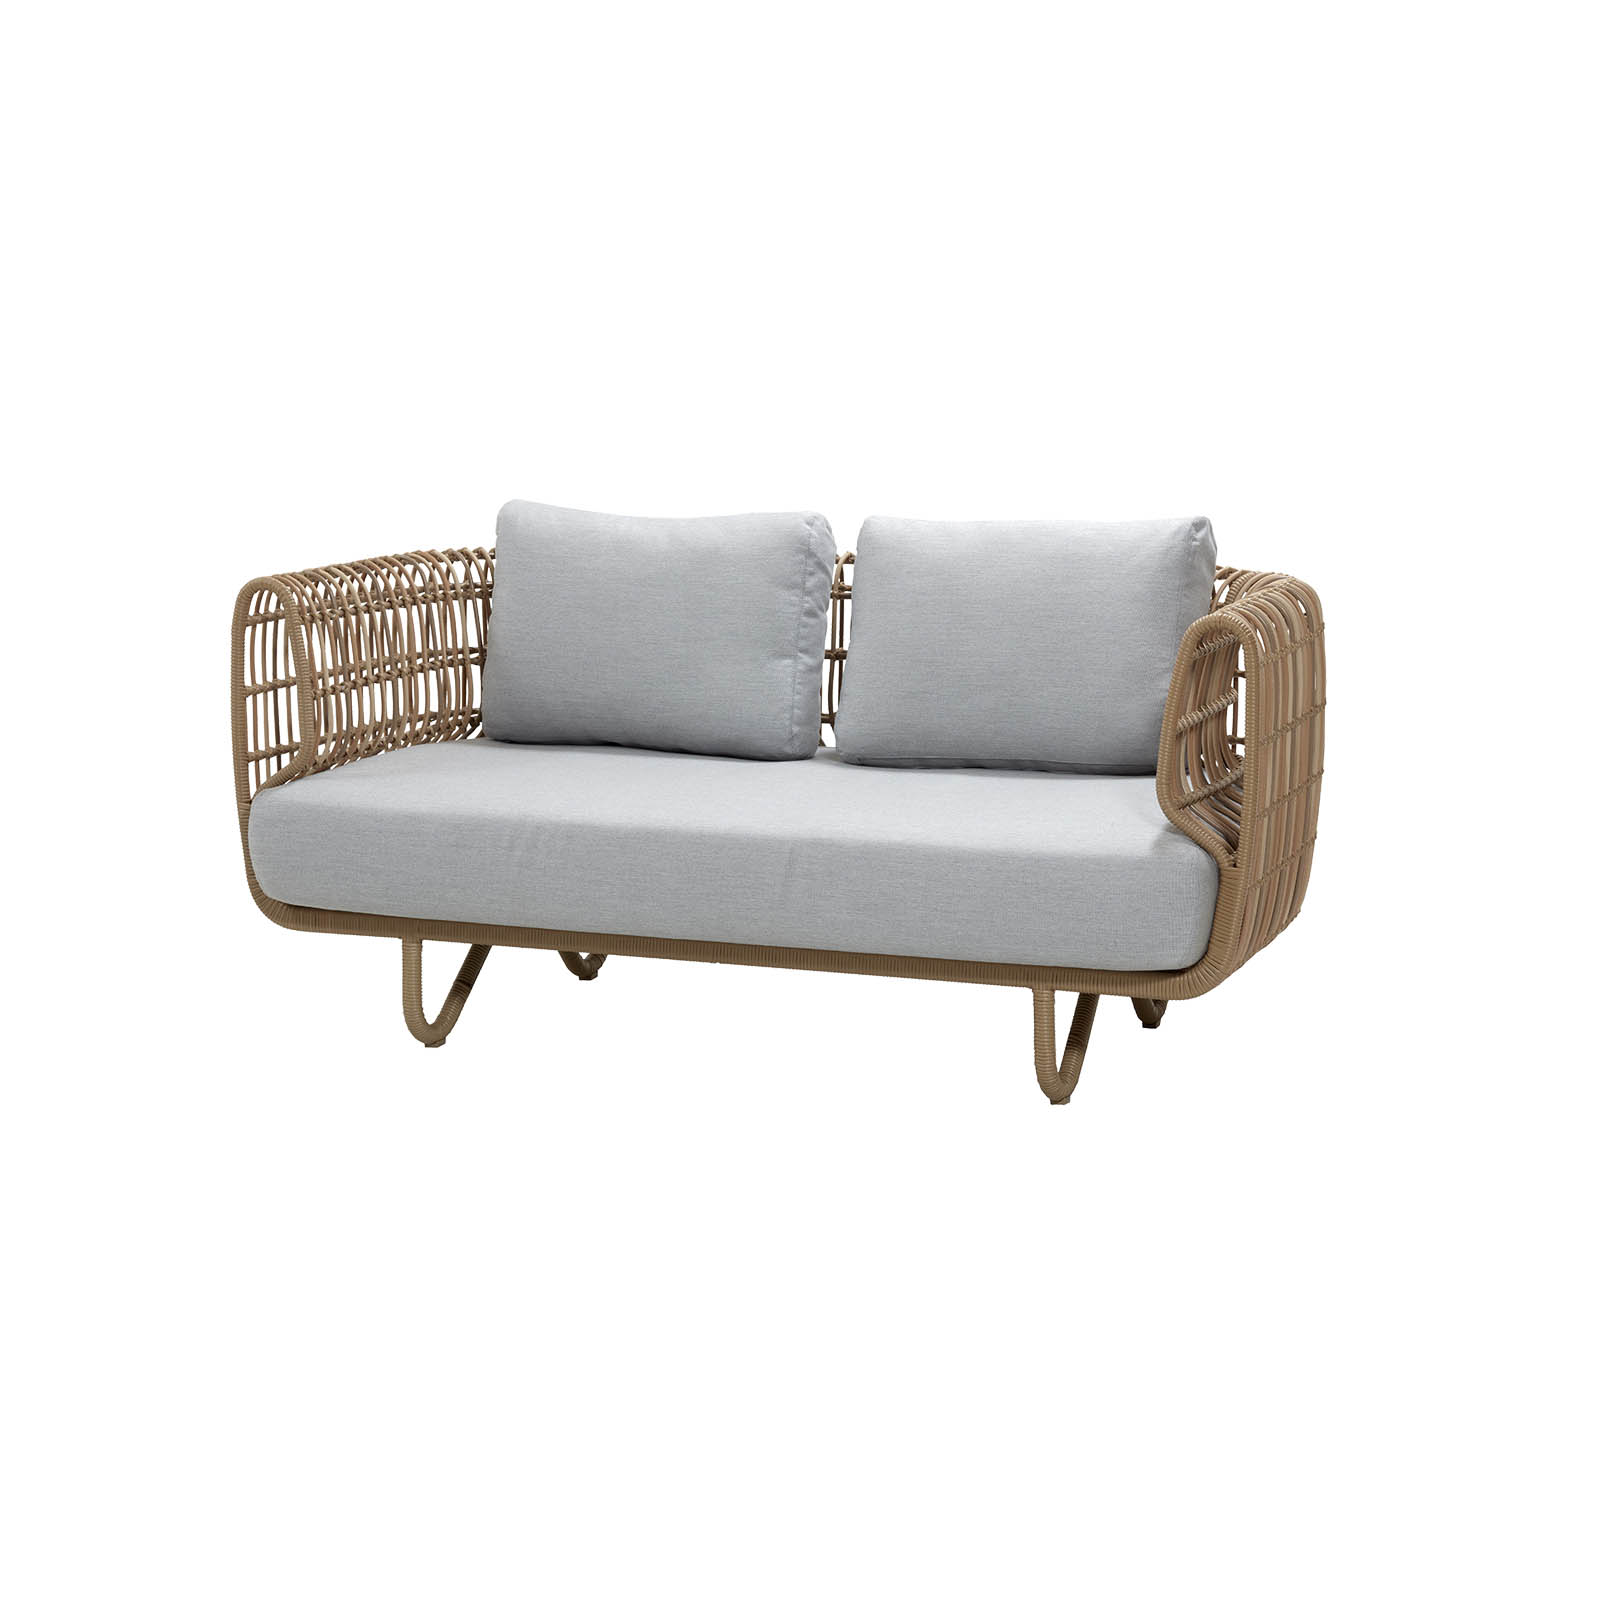 Nest 2-Sitzer Sofa aus Cane-line Weave in Natural mit Kissen aus Cane-line Natté in Light Grey